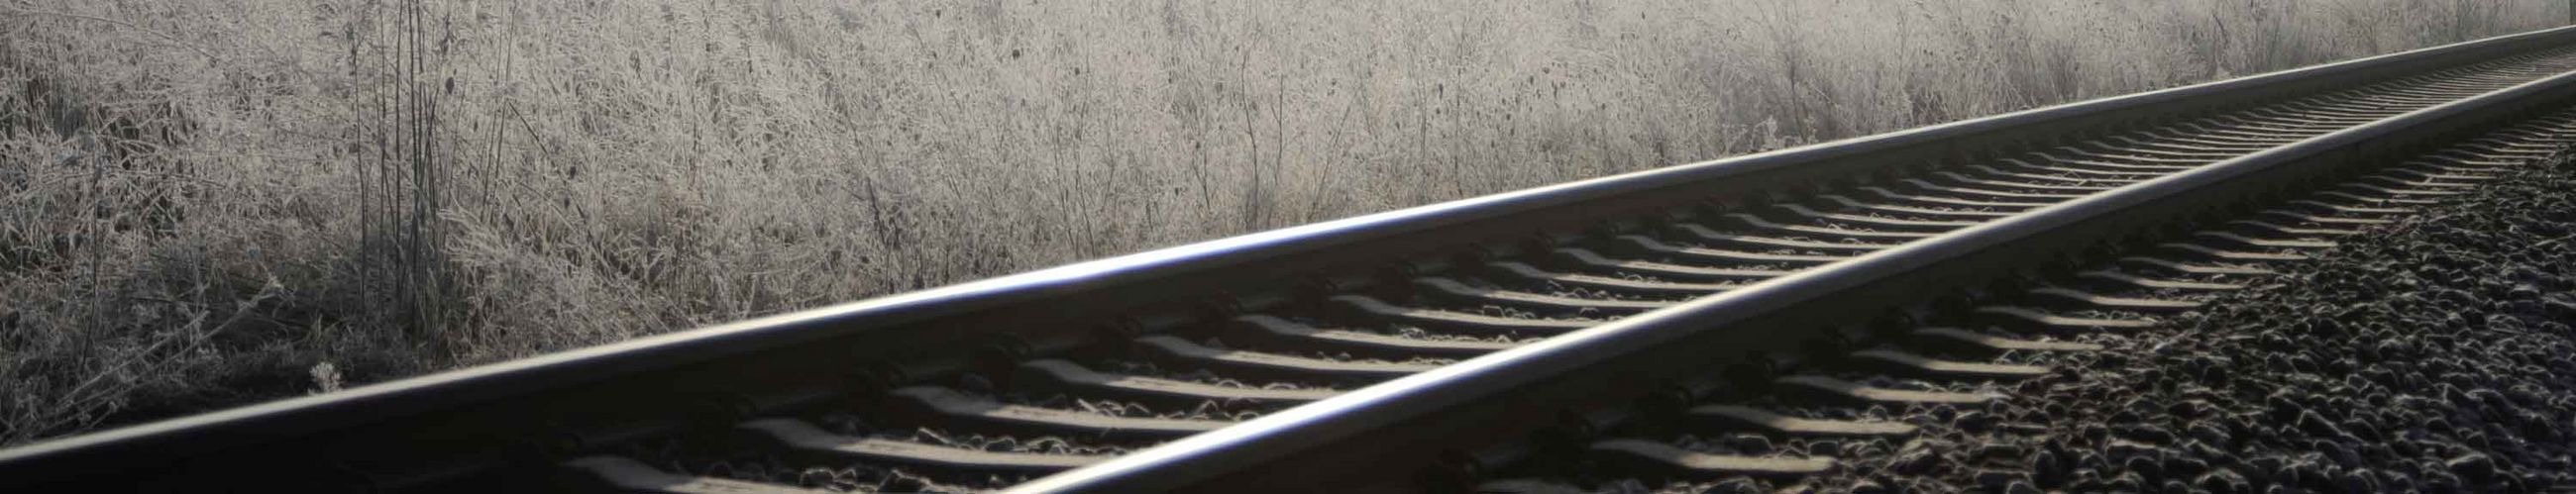 Eisenbahnschienen ziehen sich quer durch das Bild, links von ihnen wachsen Gräser und rechts von ihnen liegt Schotter.